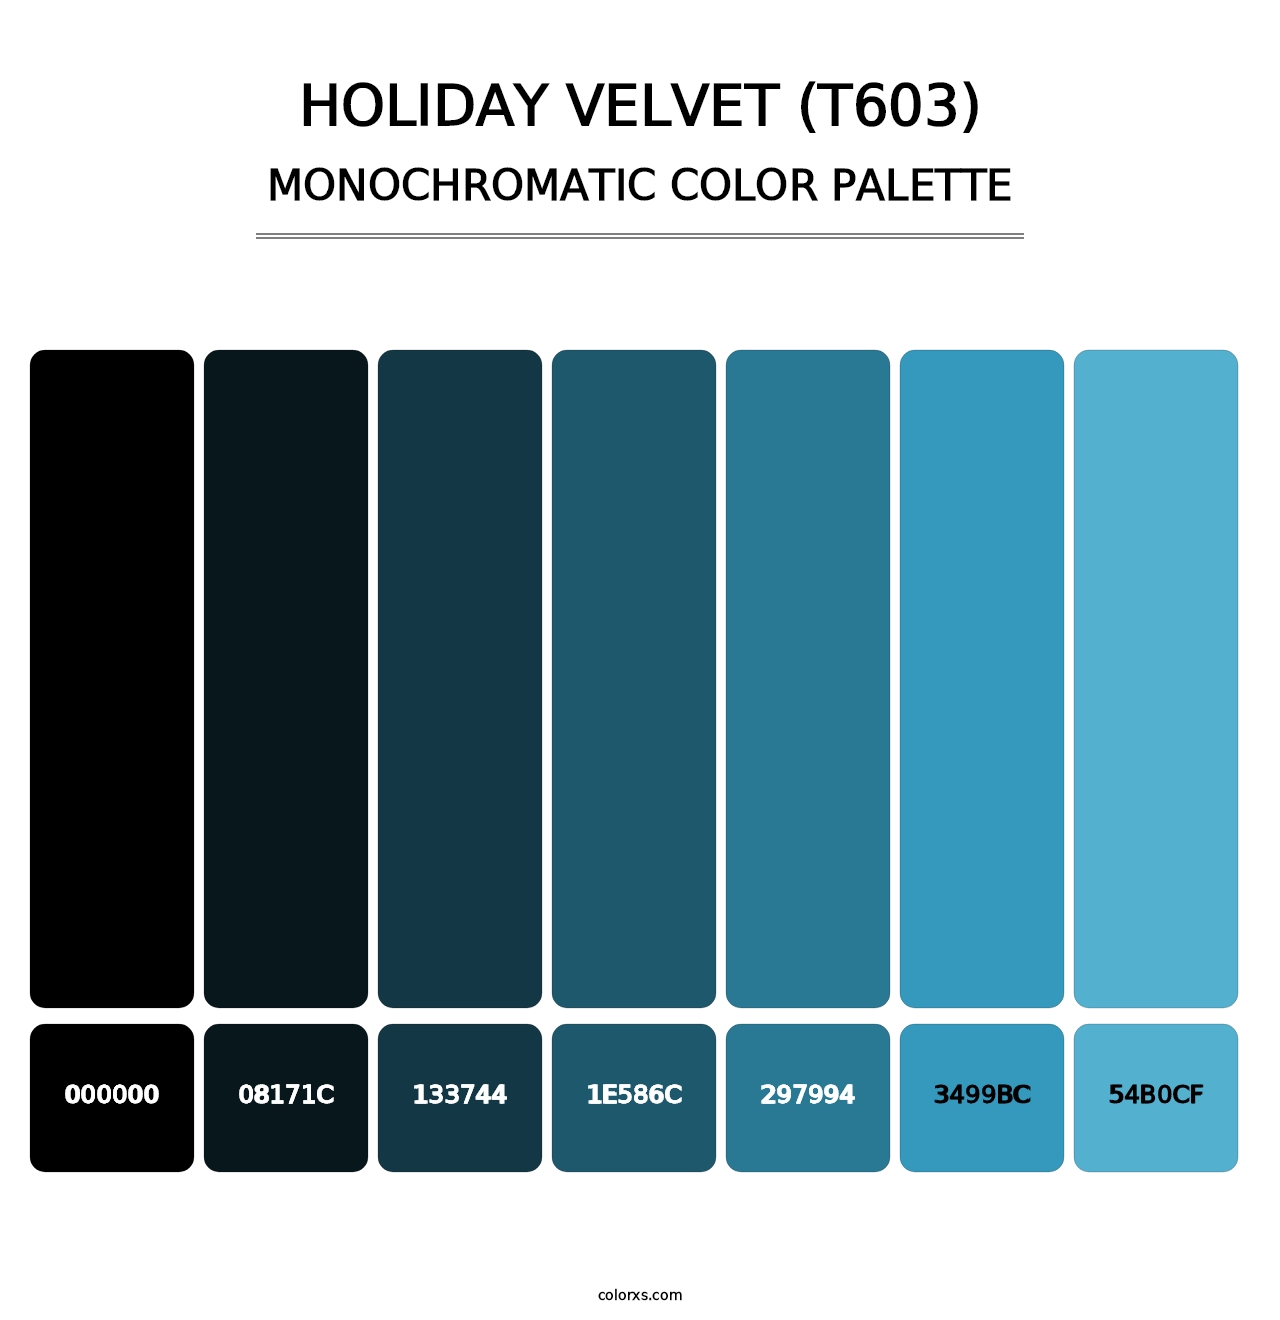 Holiday Velvet (T603) - Monochromatic Color Palette